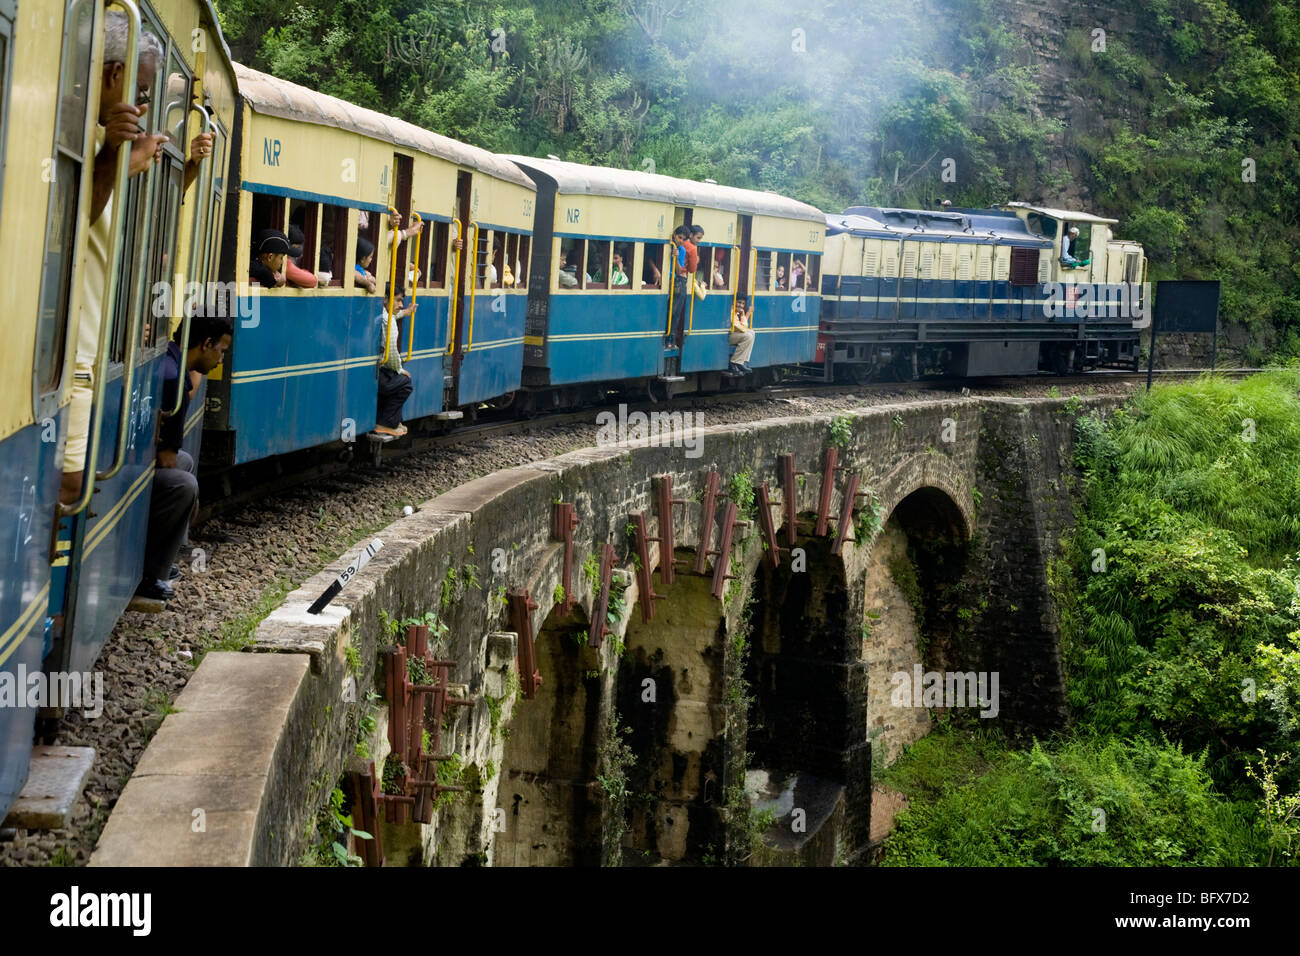 Zug und Wagen überqueren Kalka-Shimla Railway Bridge-Nummer 493. Shimla, Indien. Stockfoto